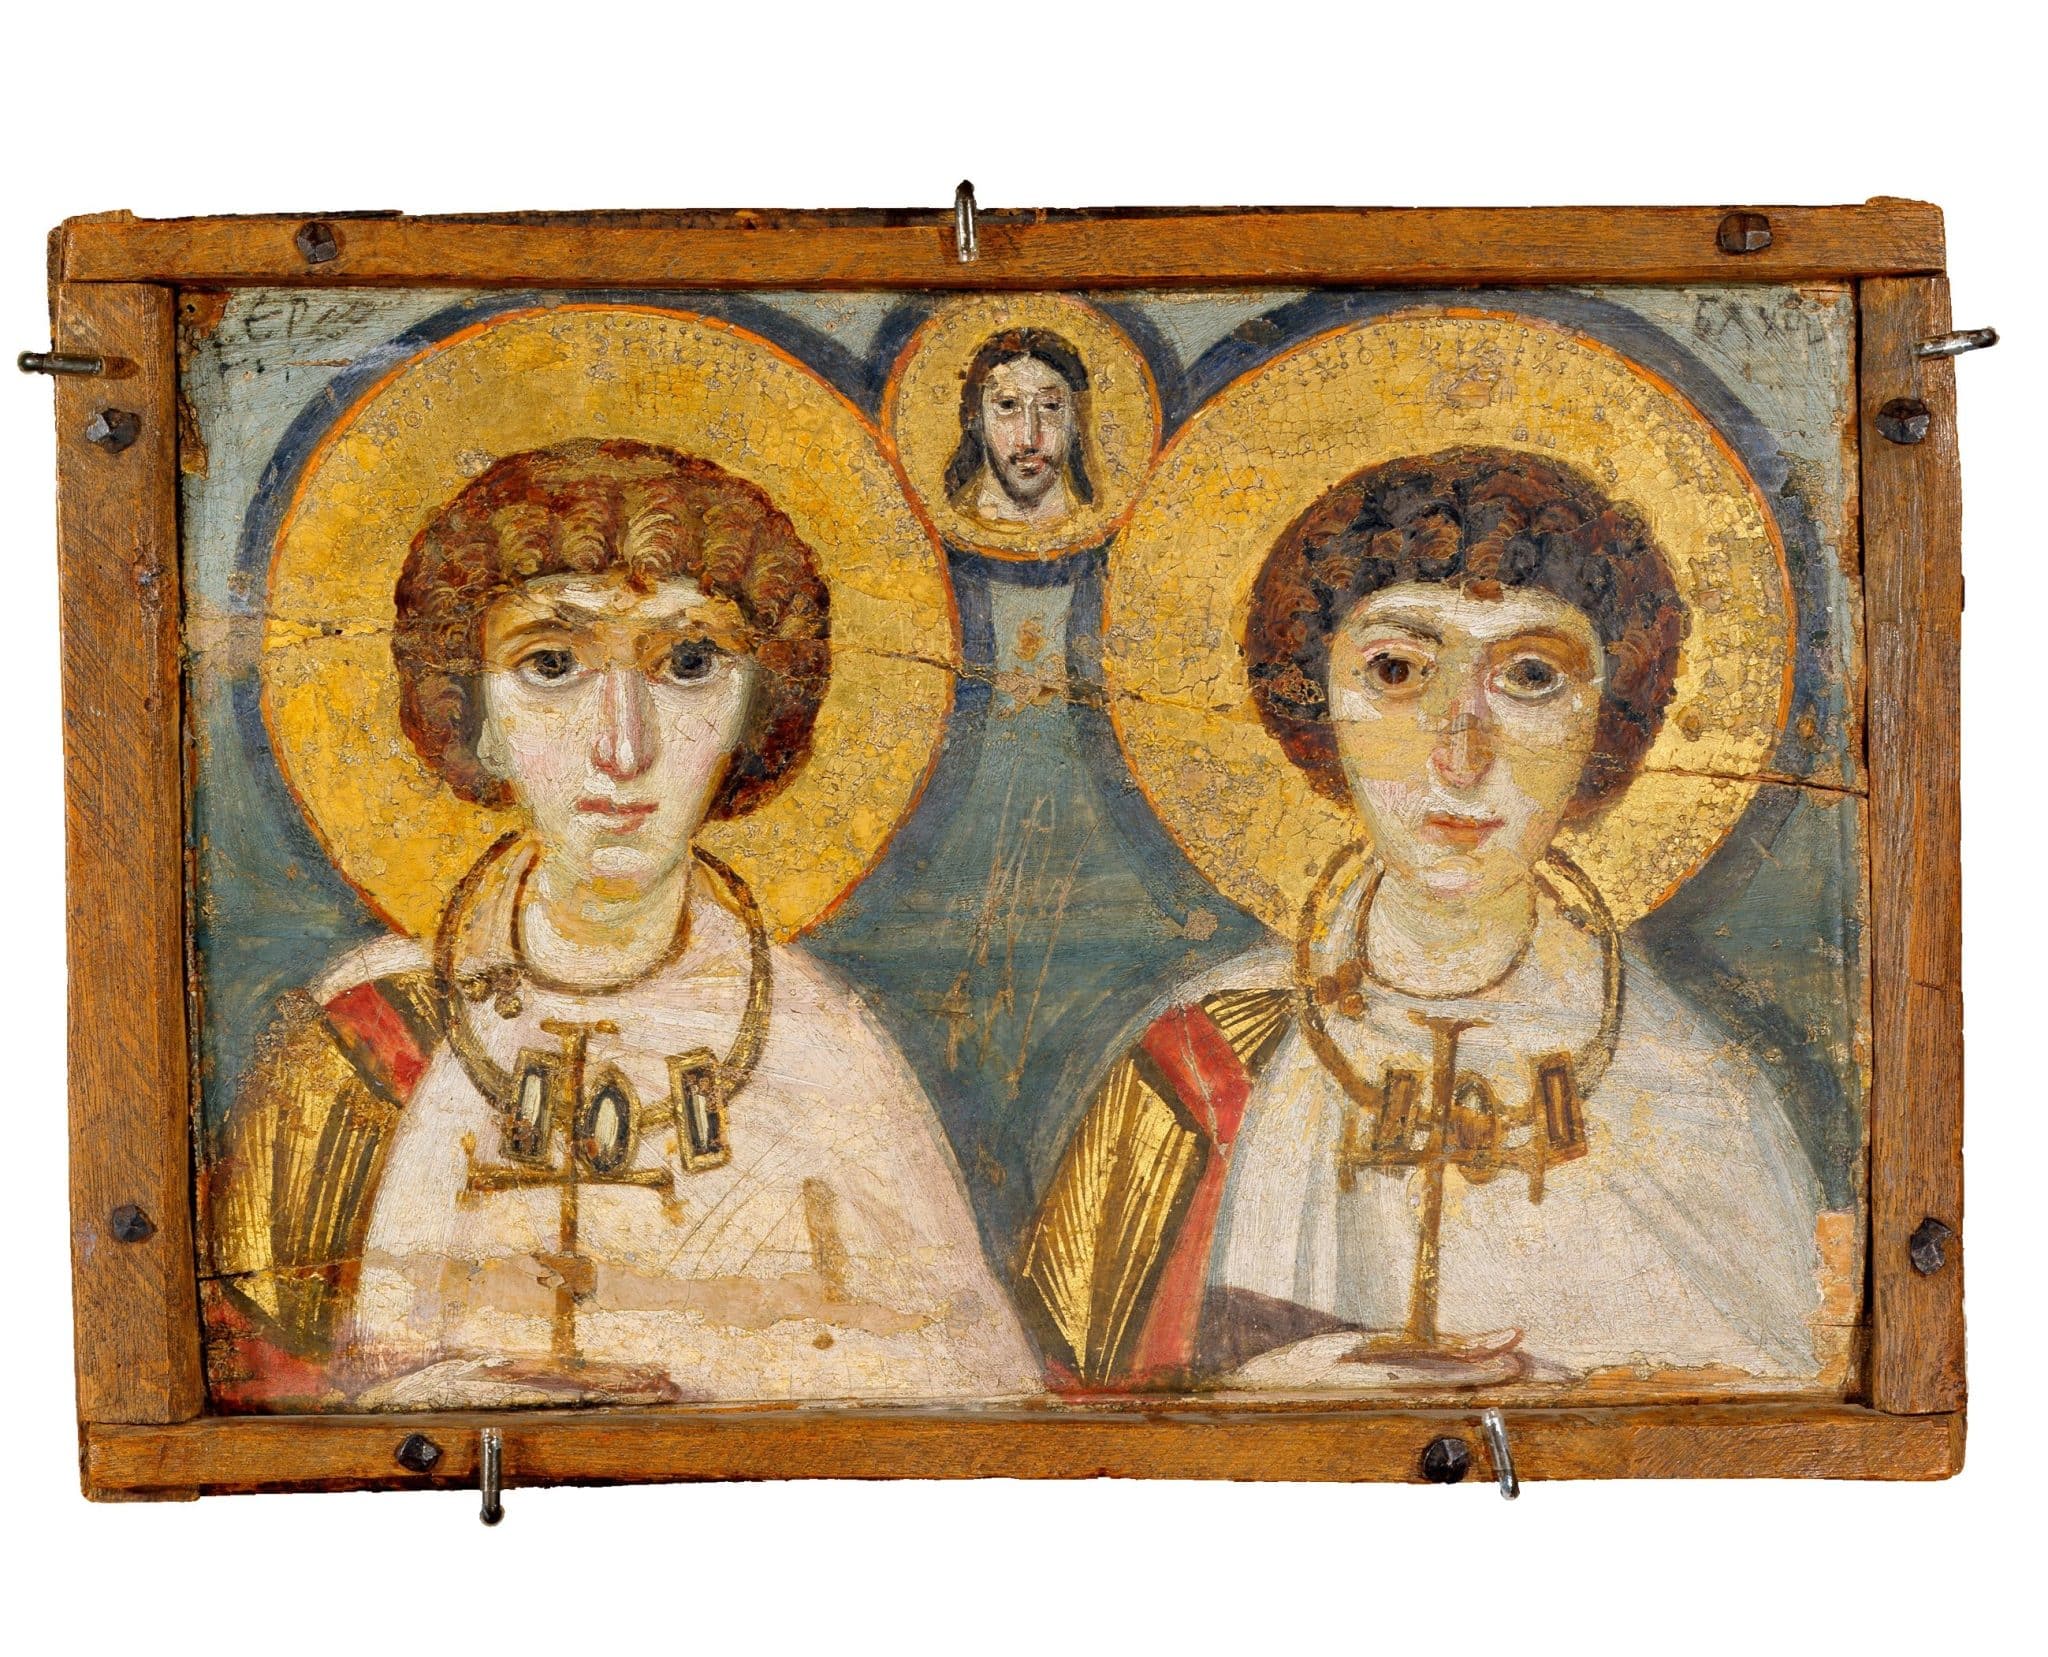 Βυζαντινές αγιογραφίες που φυγαδεύτηκαν από το Κίεβο εκτίθενται στο Μουσείο στο Λούβρο